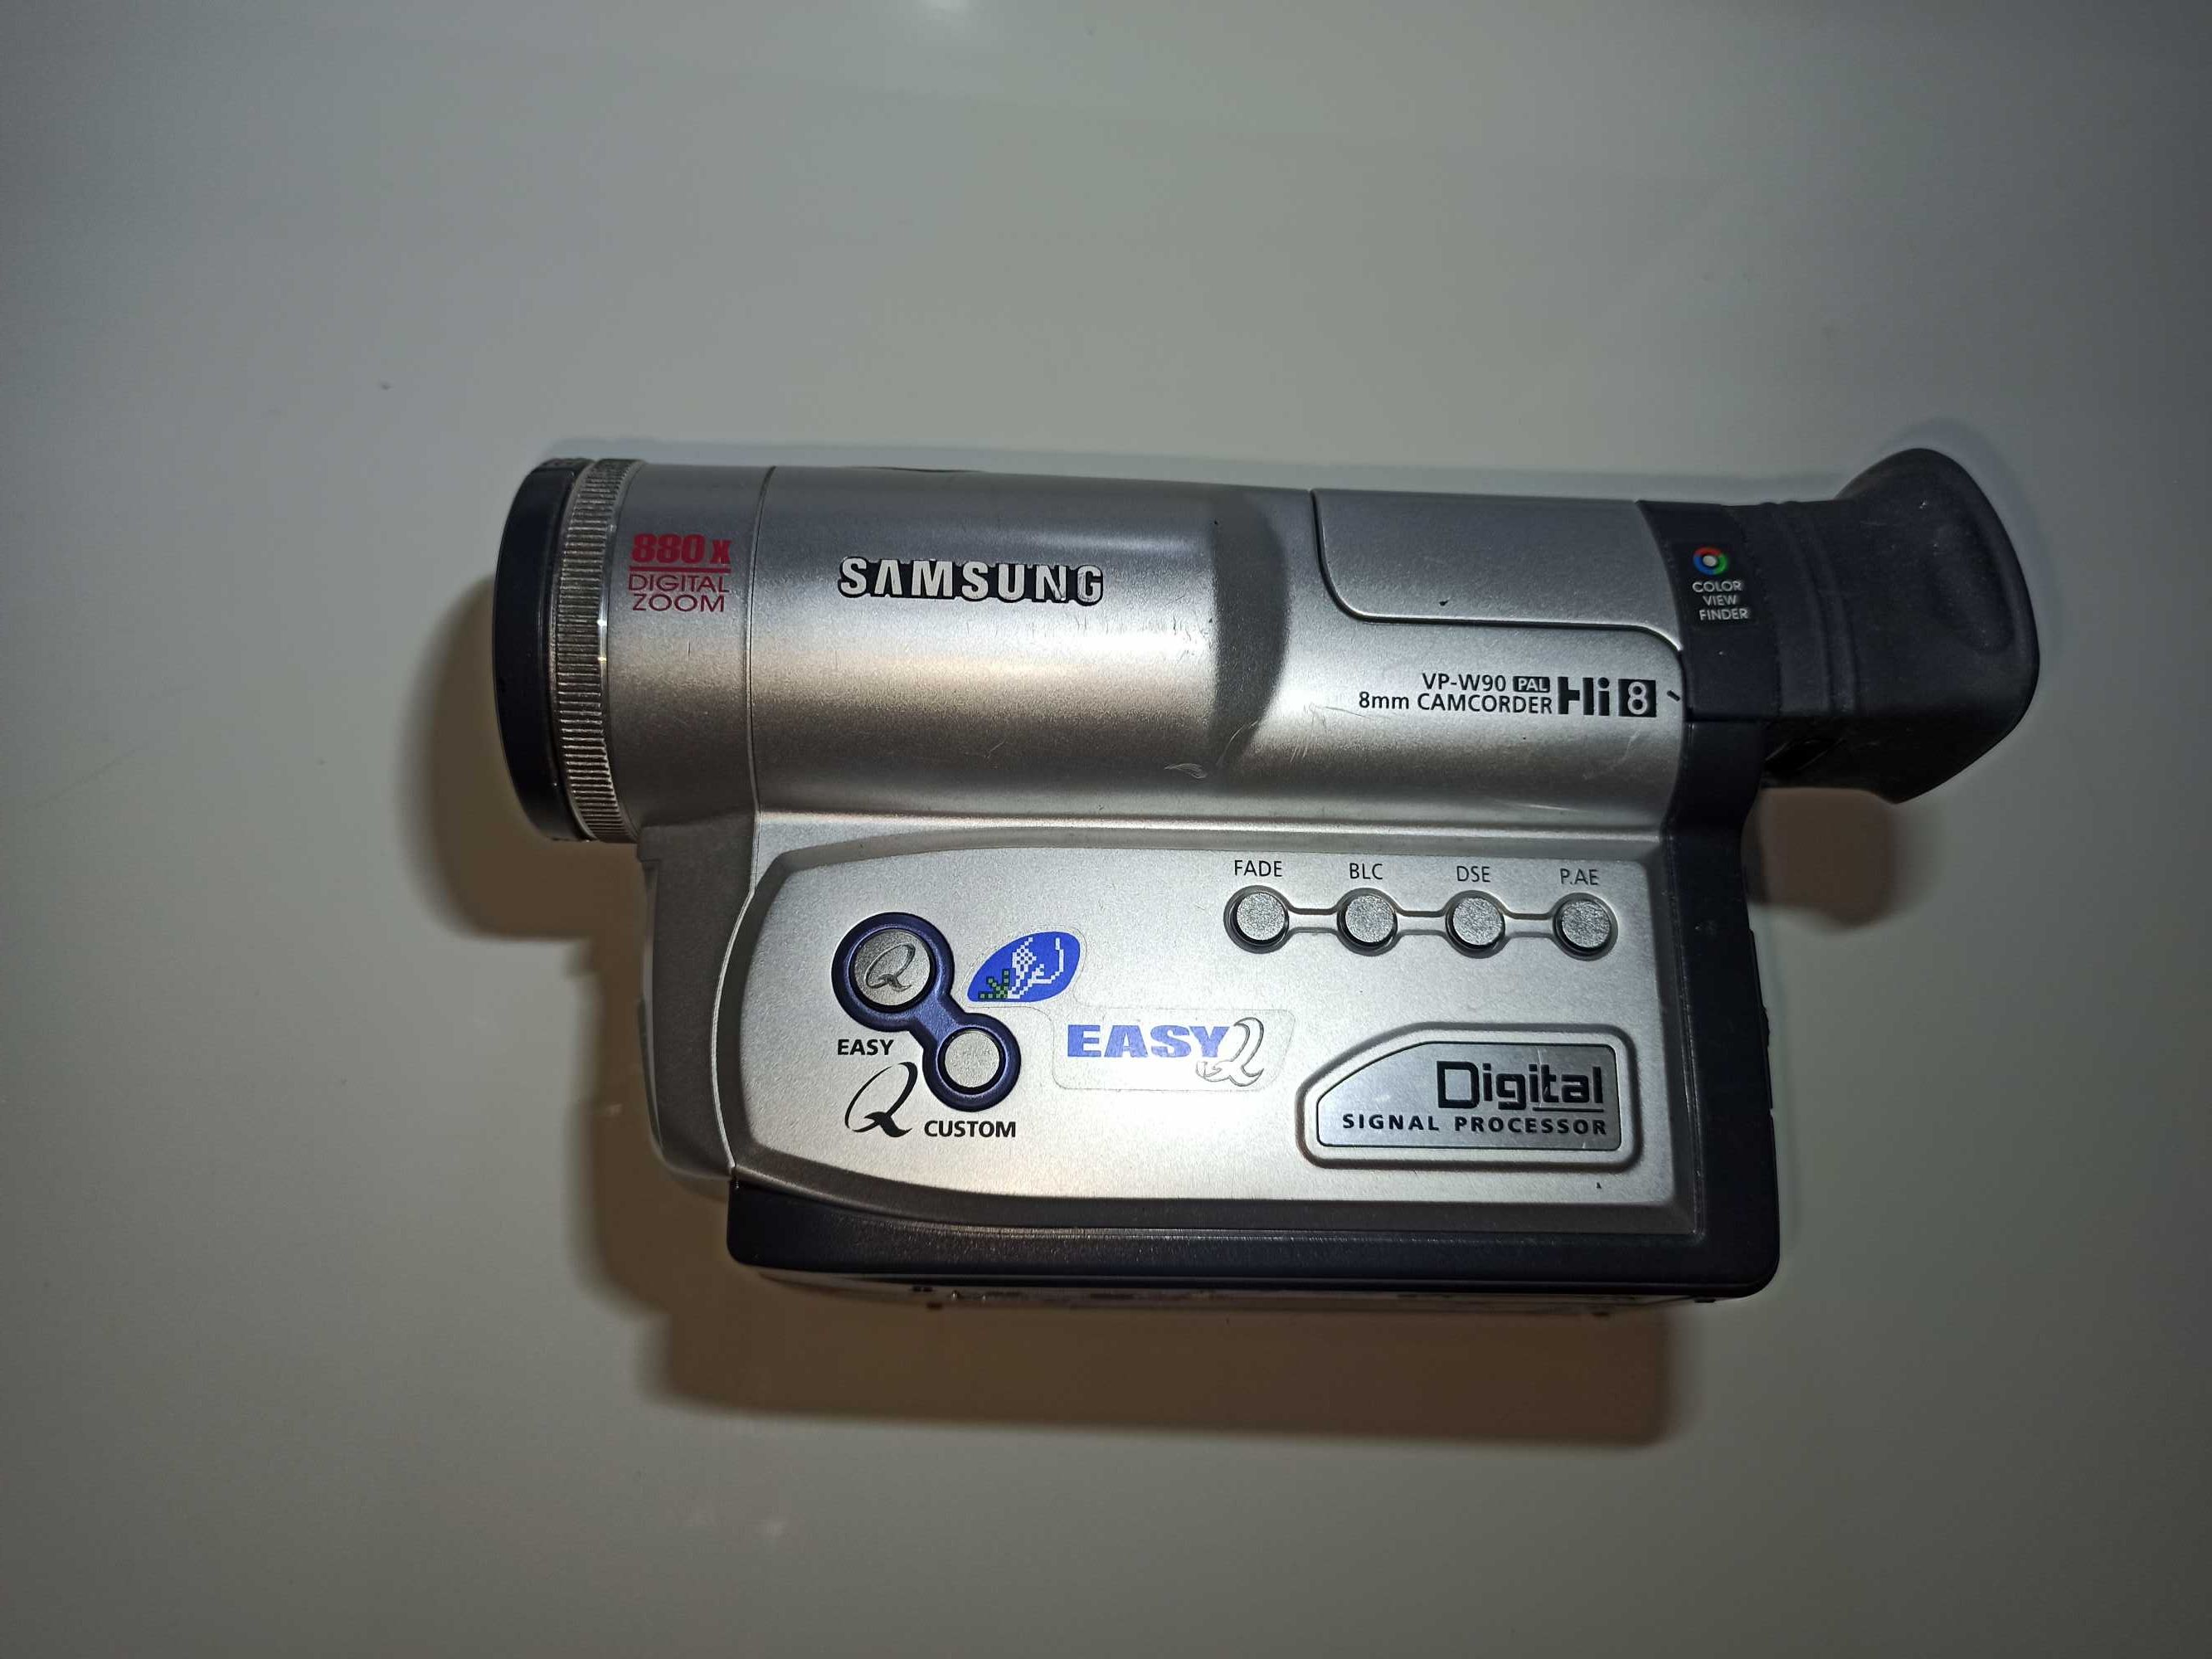 Відеокамера Samsung VP-W90 880 ZOOM привезена з японії